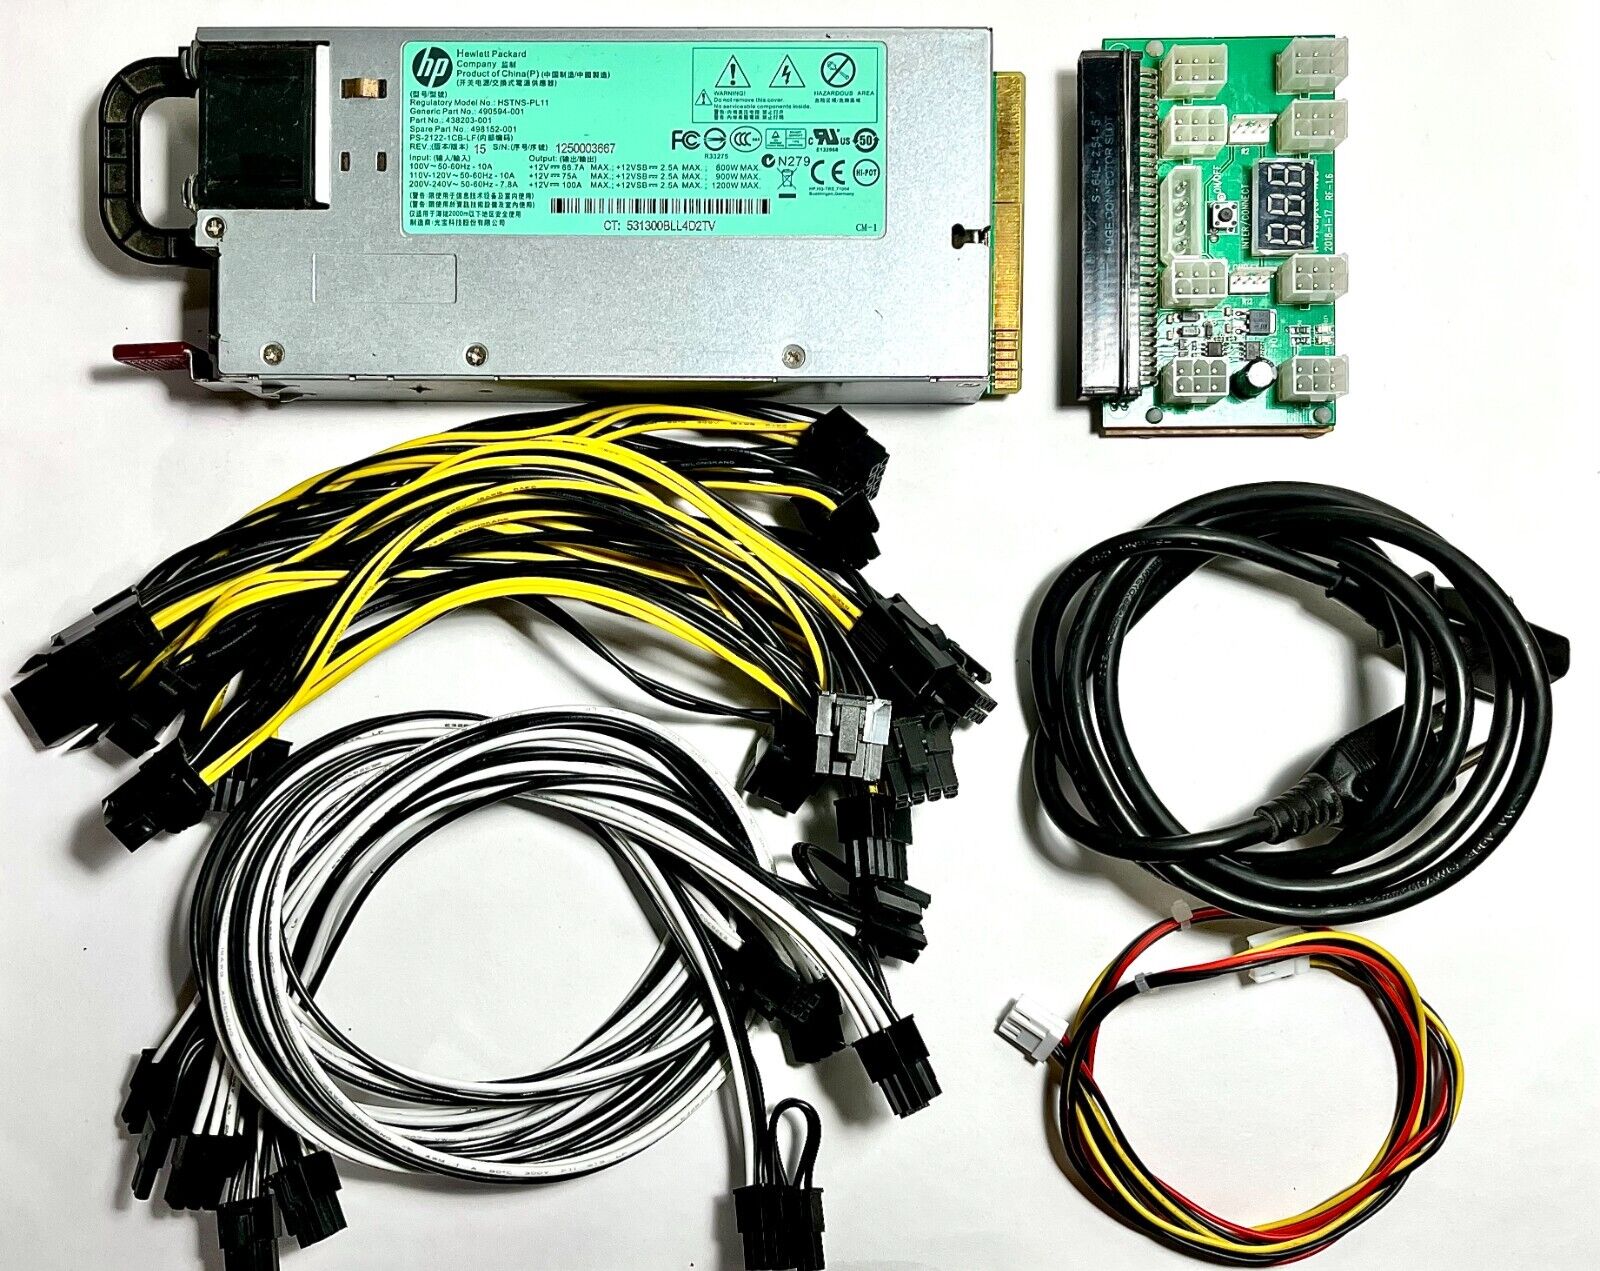 HP 1200W PSU Kit Breakout Board w/ PCI-E Cables, Splitters & More